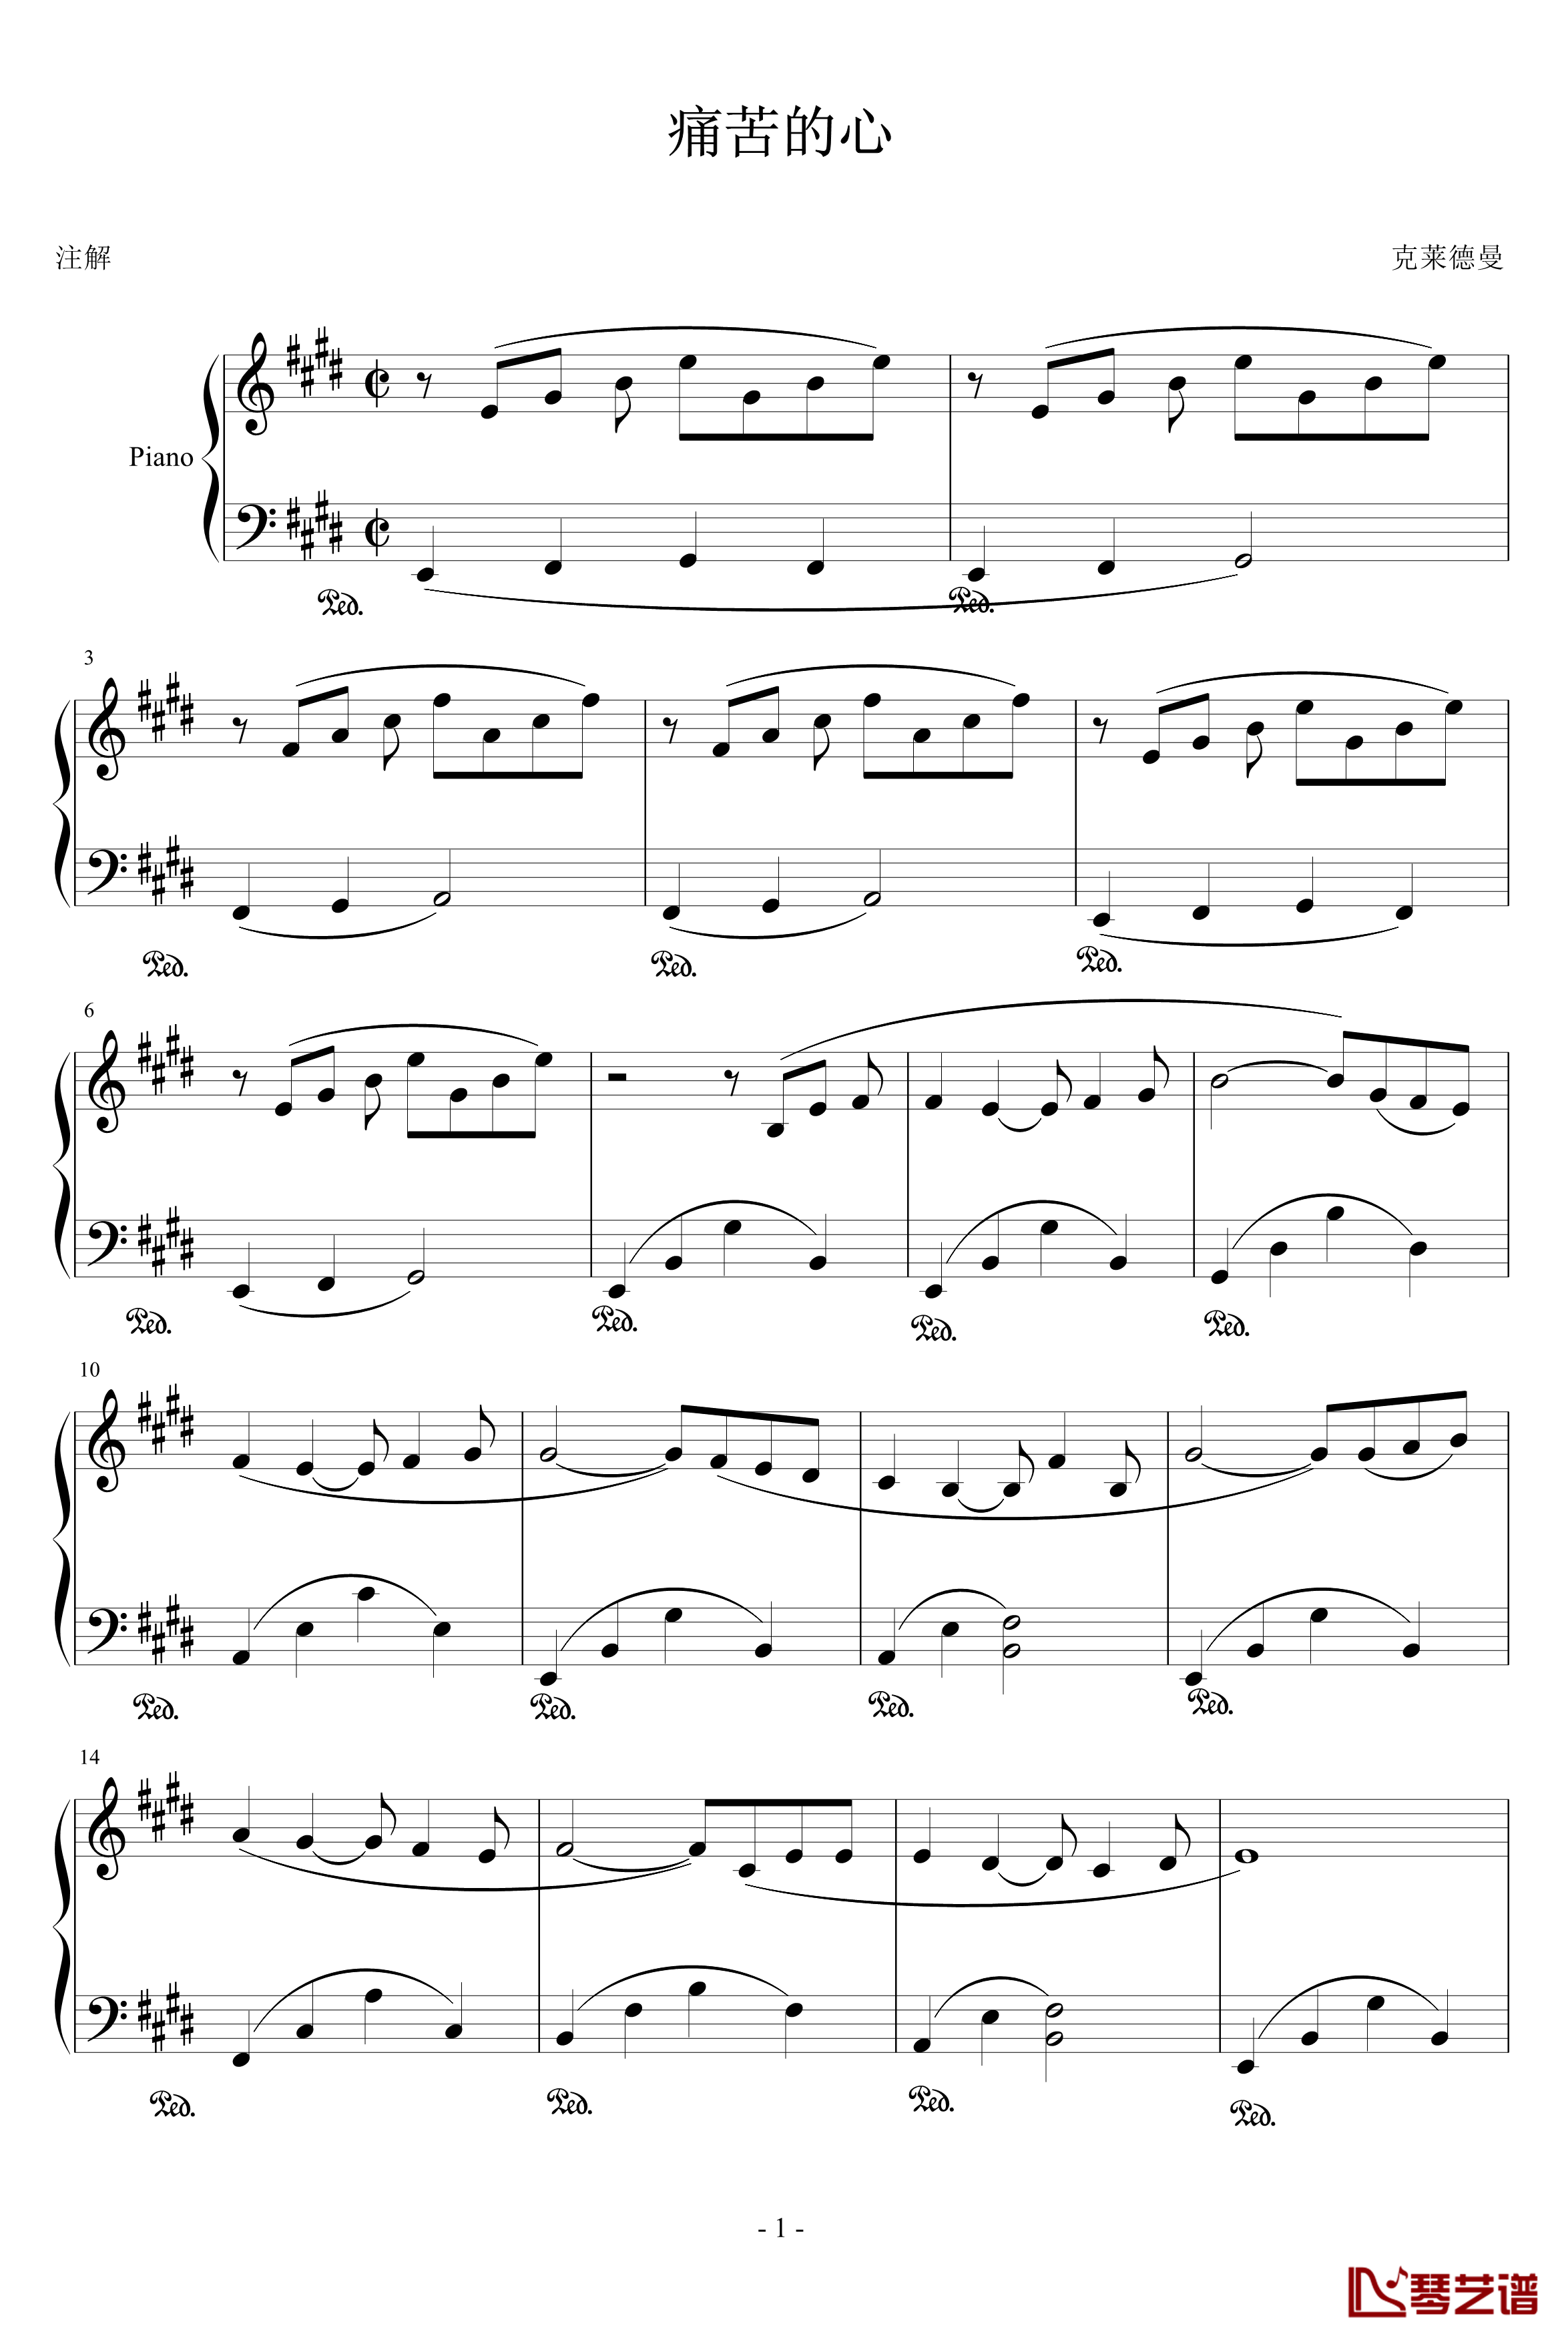 痛苦的心钢琴谱-zhoucong009上传版-克莱德曼